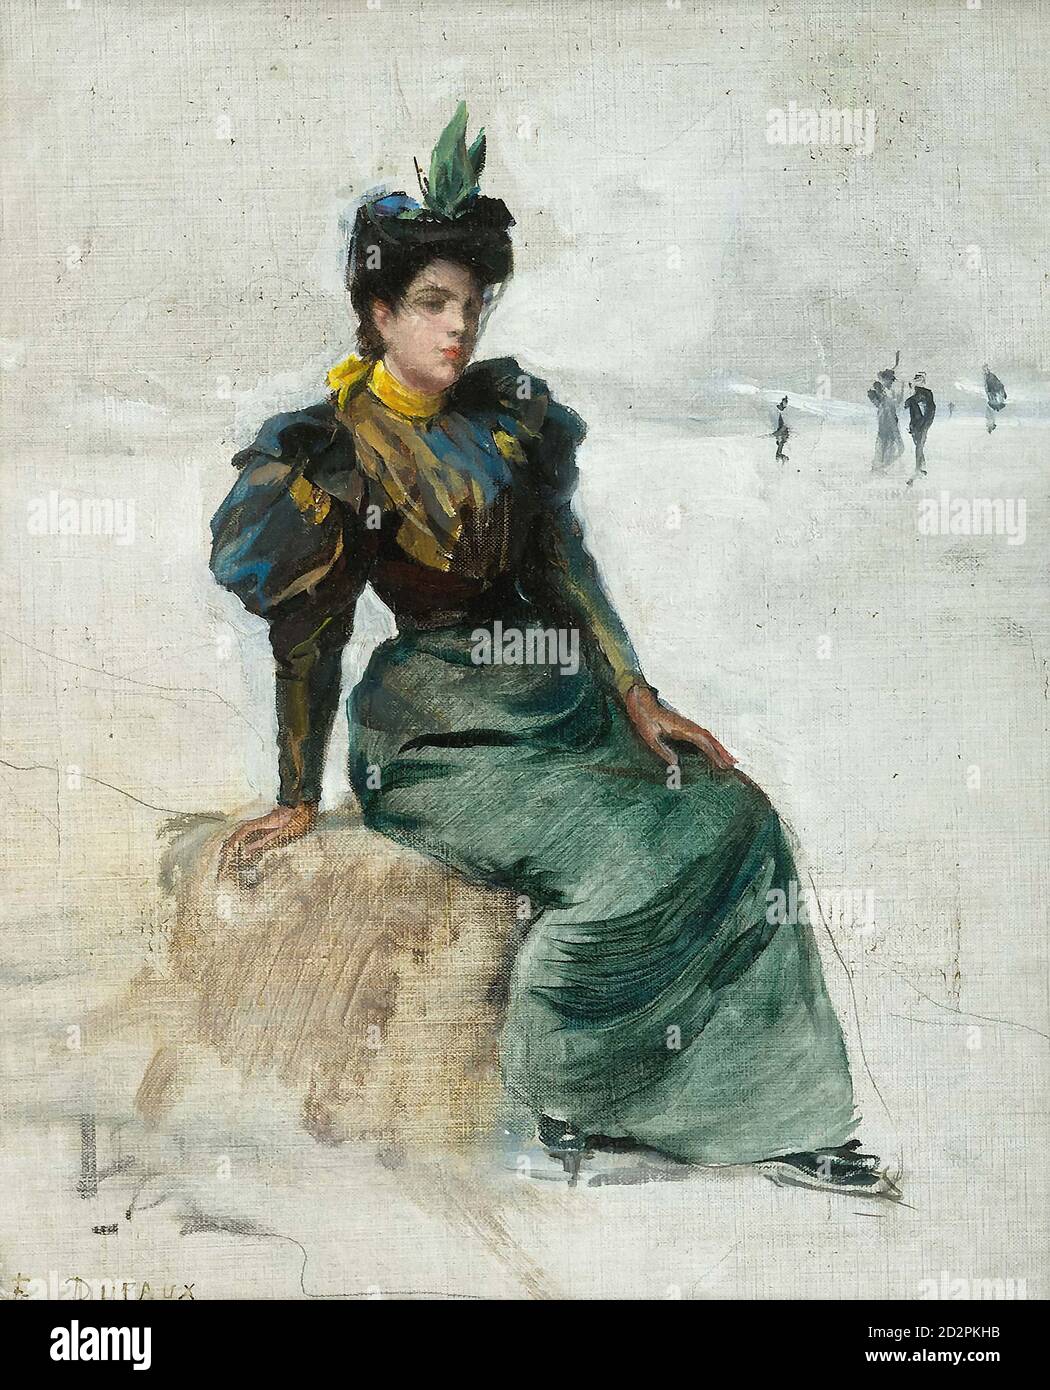 Dufaux FréDéric - Junge Dame Sich Vom Eislaufen Erholend - Swiss School - 19th  Century Stock Photo